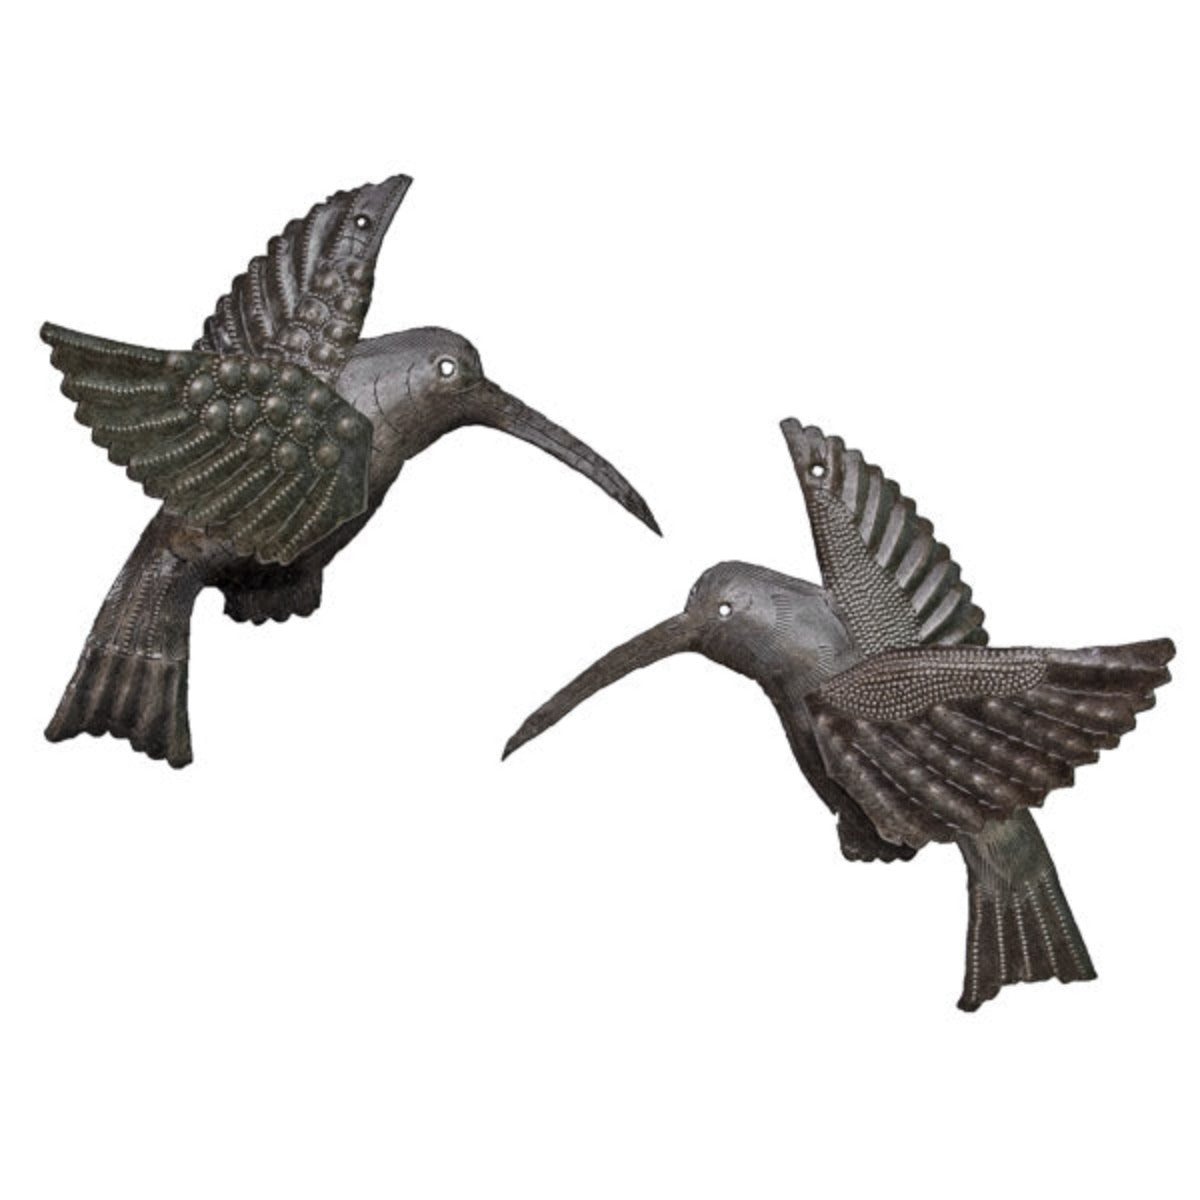 Hummingbird Pair